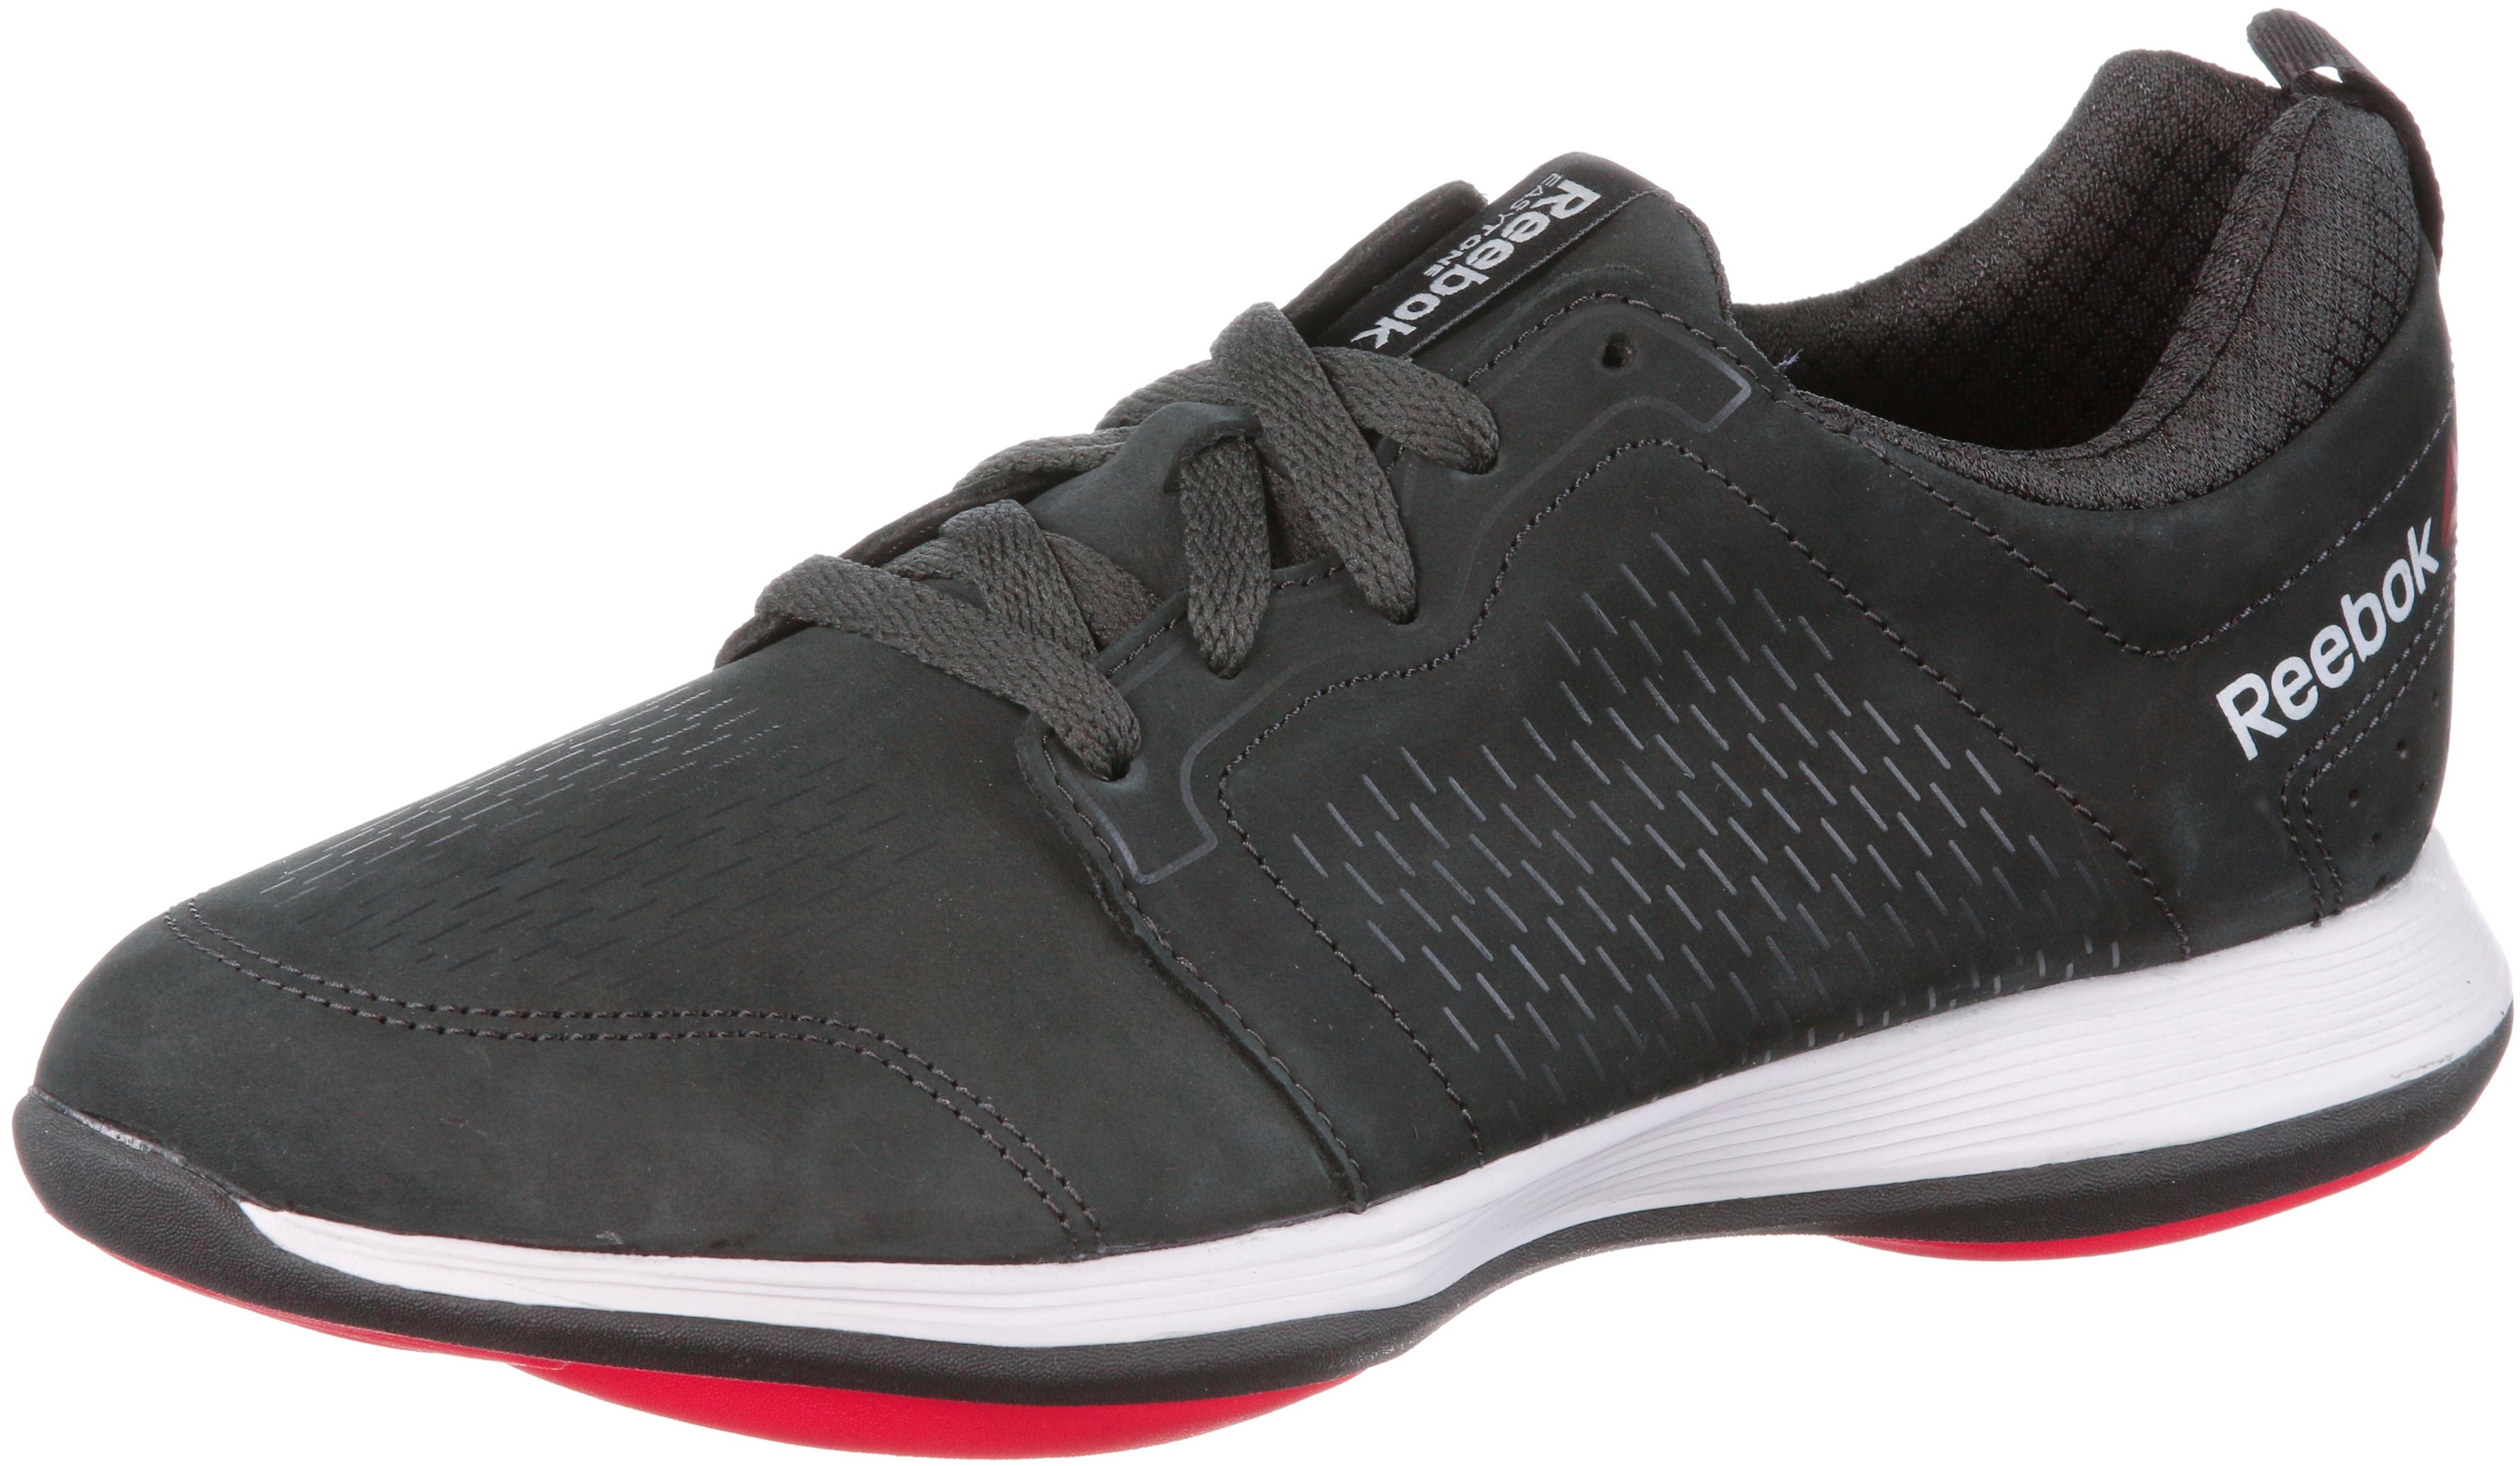 Reebok Easytone 2.0 ATH STY LTR Walkingschuhe Damen schwarz/rot im Online  Shop von SportScheck kaufen